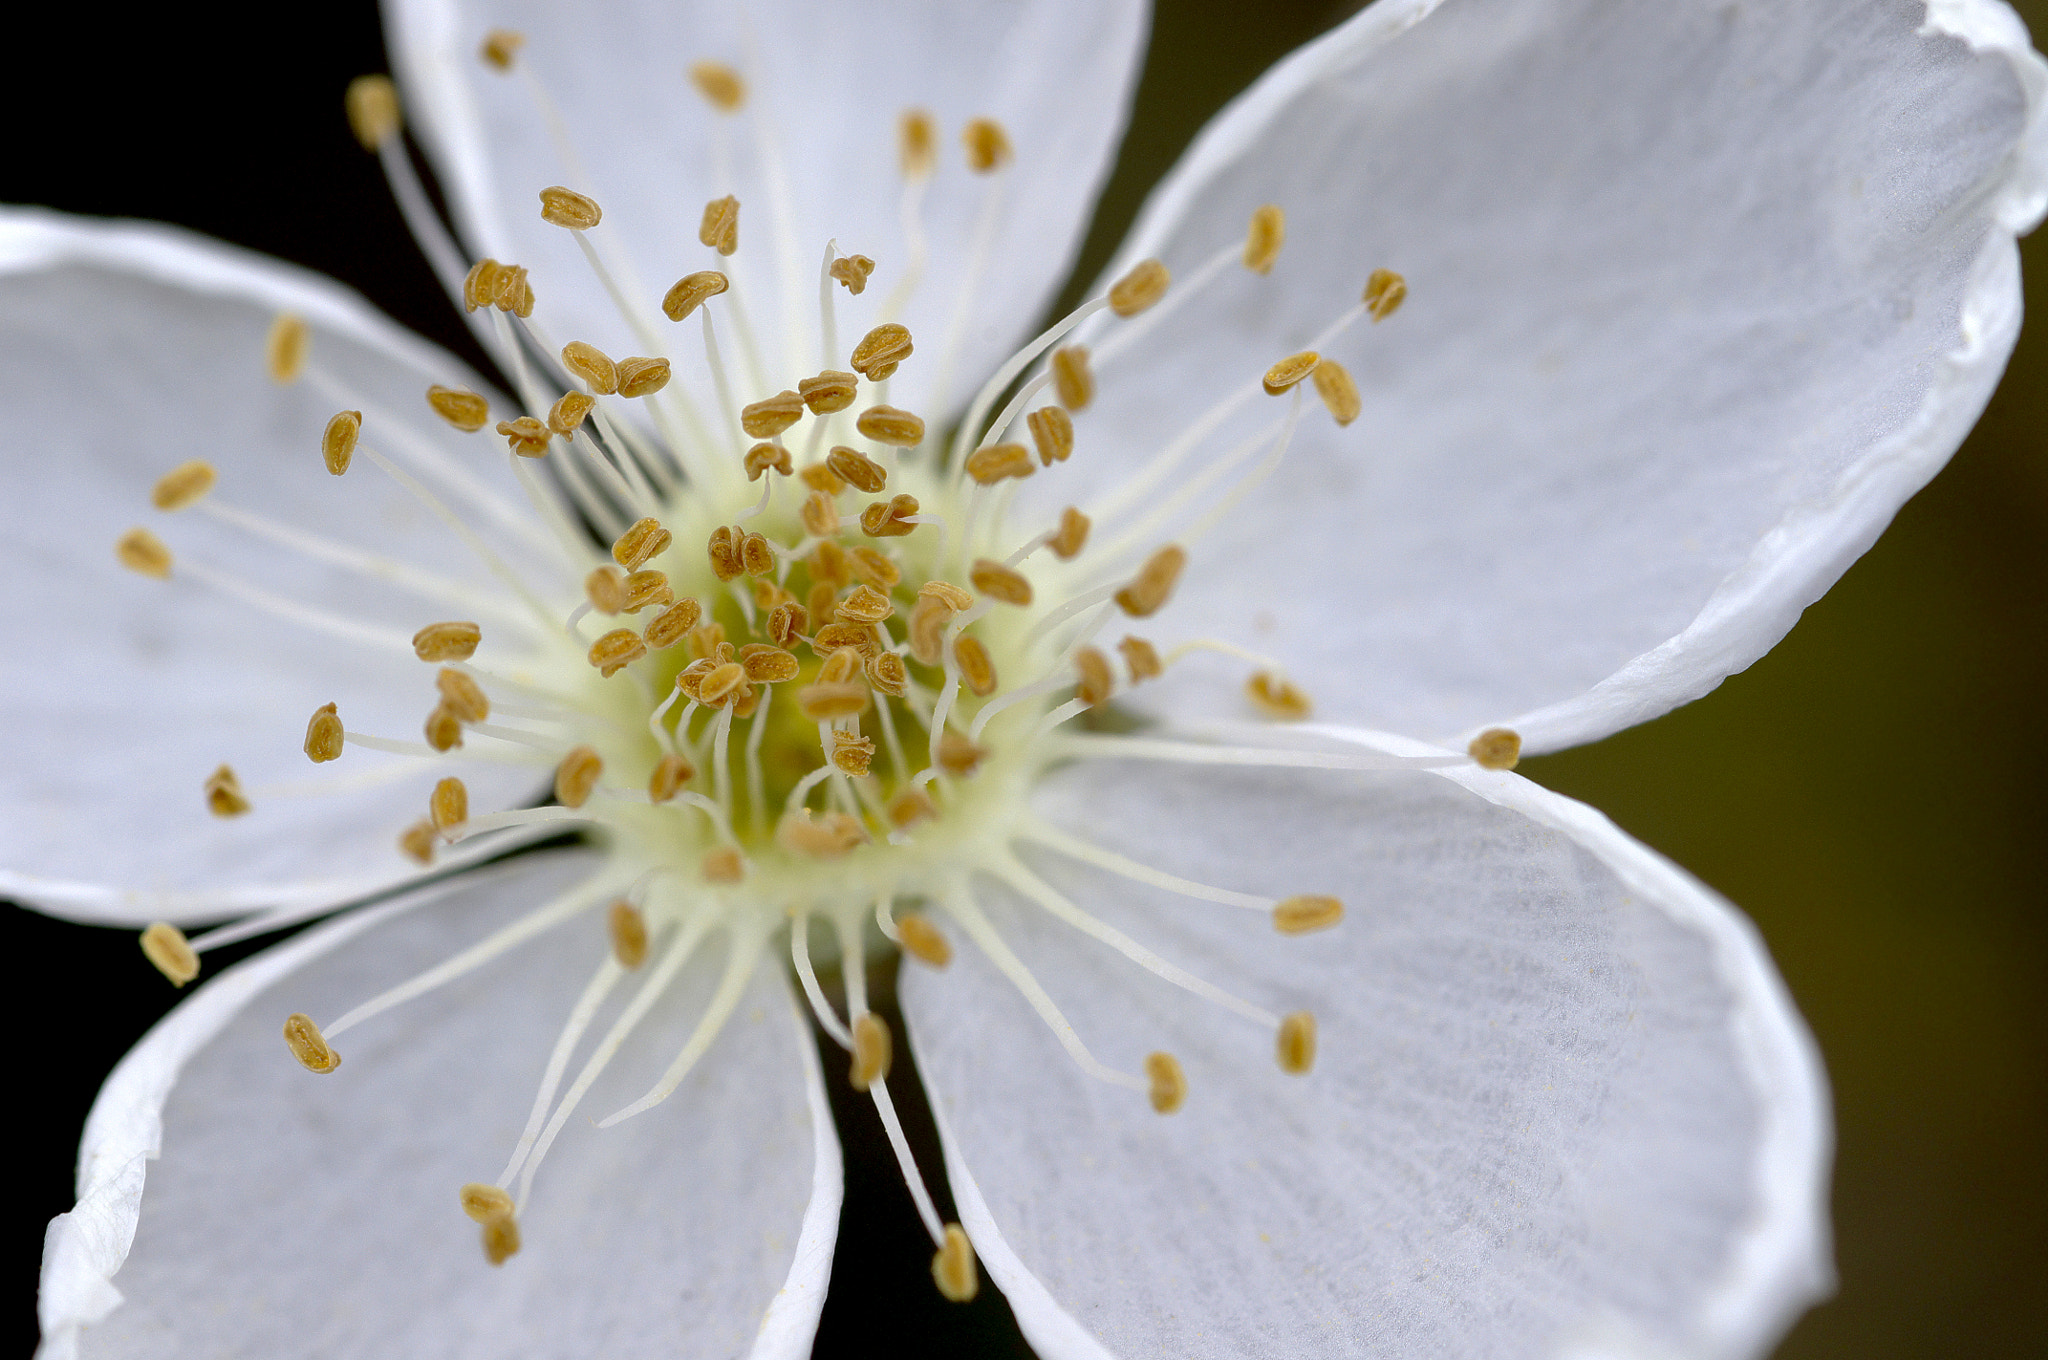 Pentax K-x sample photo. White desert flower photography